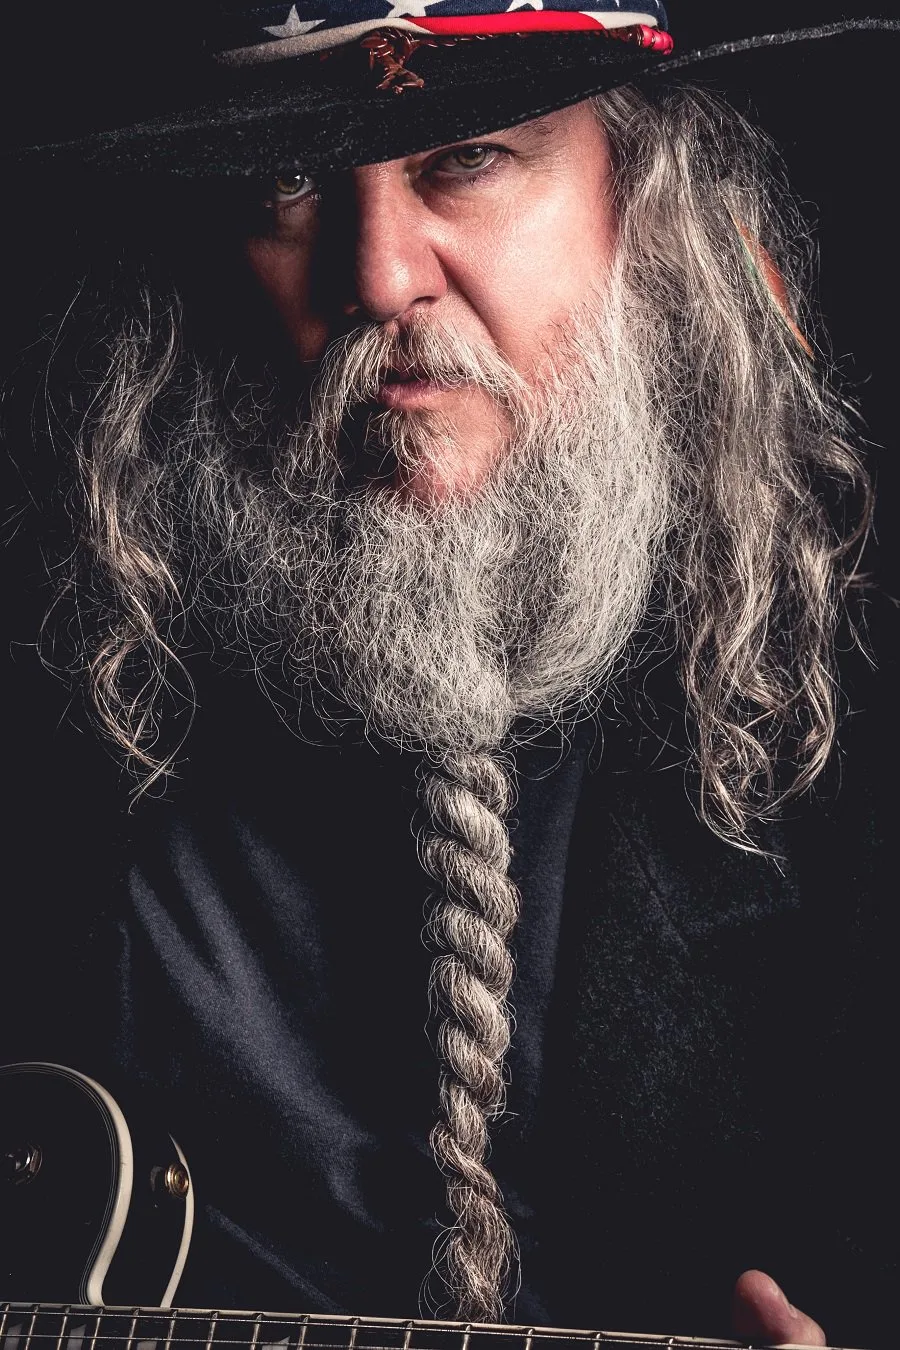 grey beard style for older men